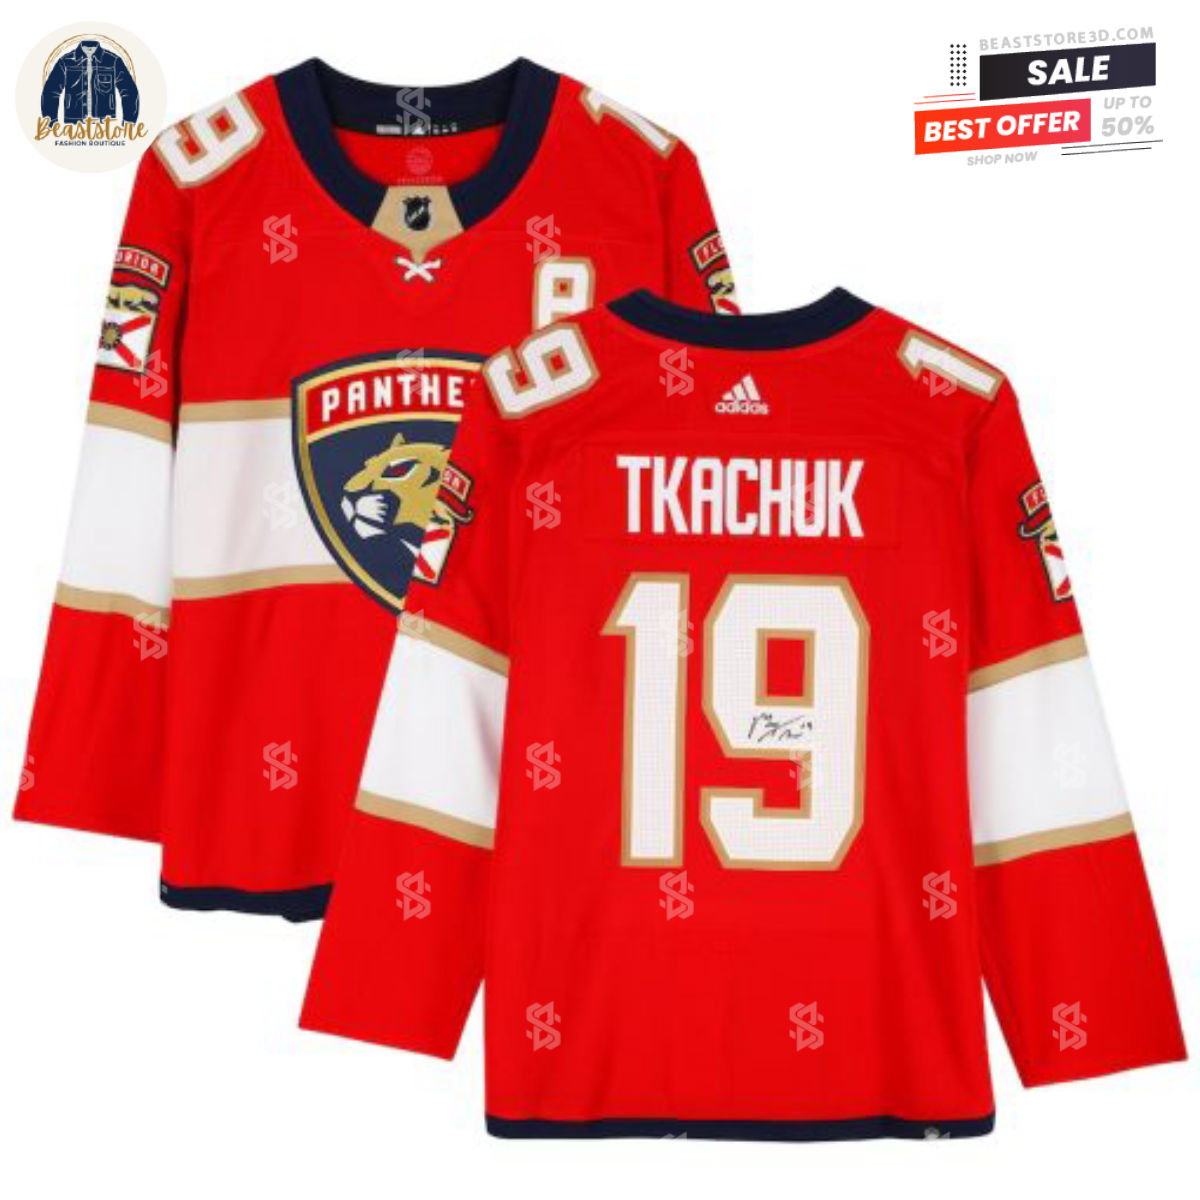 Florida Panthers Matthew Tkachuk Red Adidas NHL Hockey Jerseys